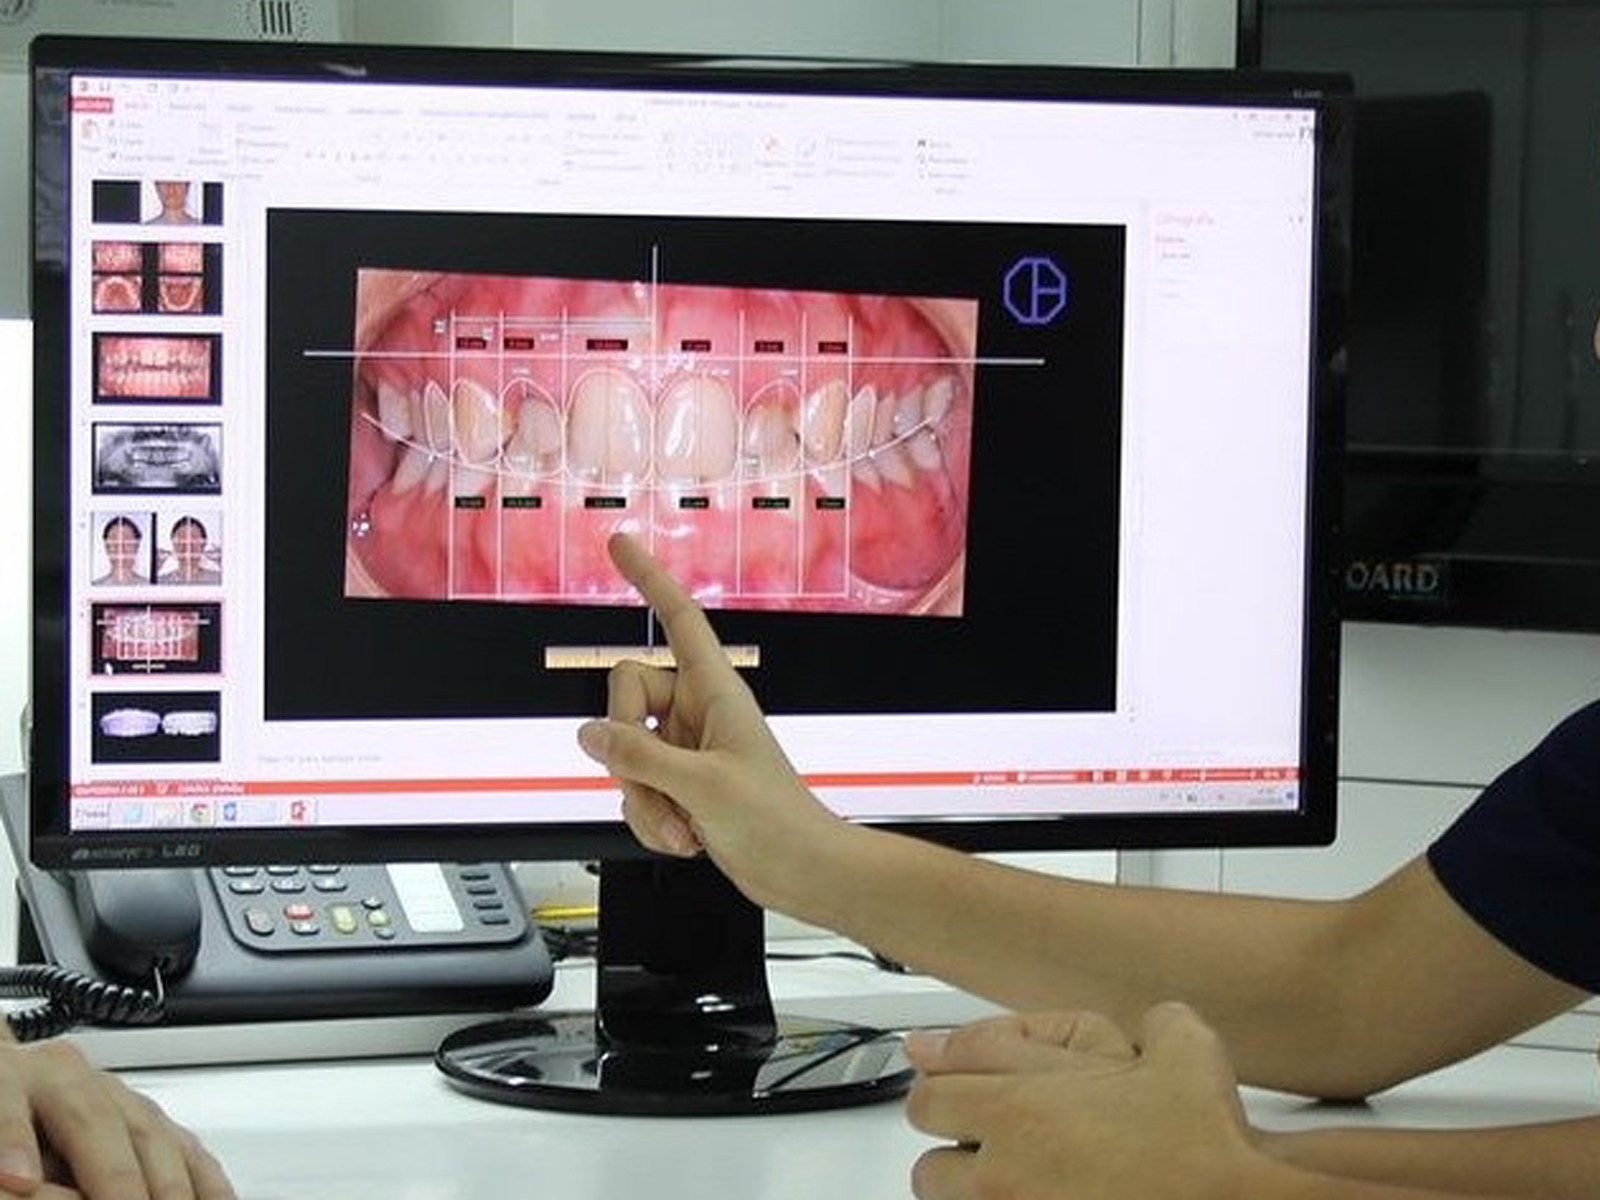 طراحی لبخند دیجیتال - کلینیک دندانپزشکی دکتر کاردگر در تهران جردن